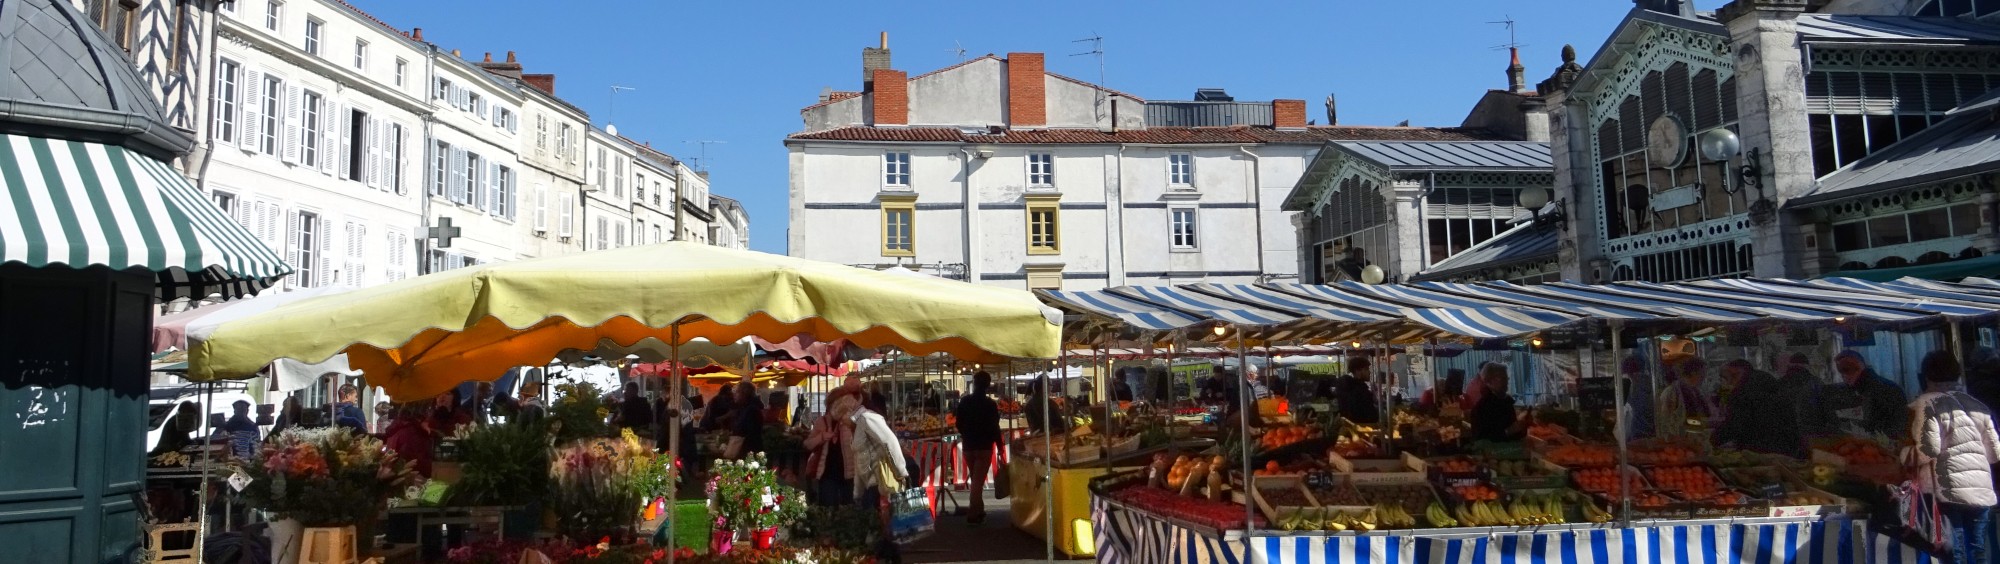 La Joie du vin - Votre caviste face au marché de La Rochelle